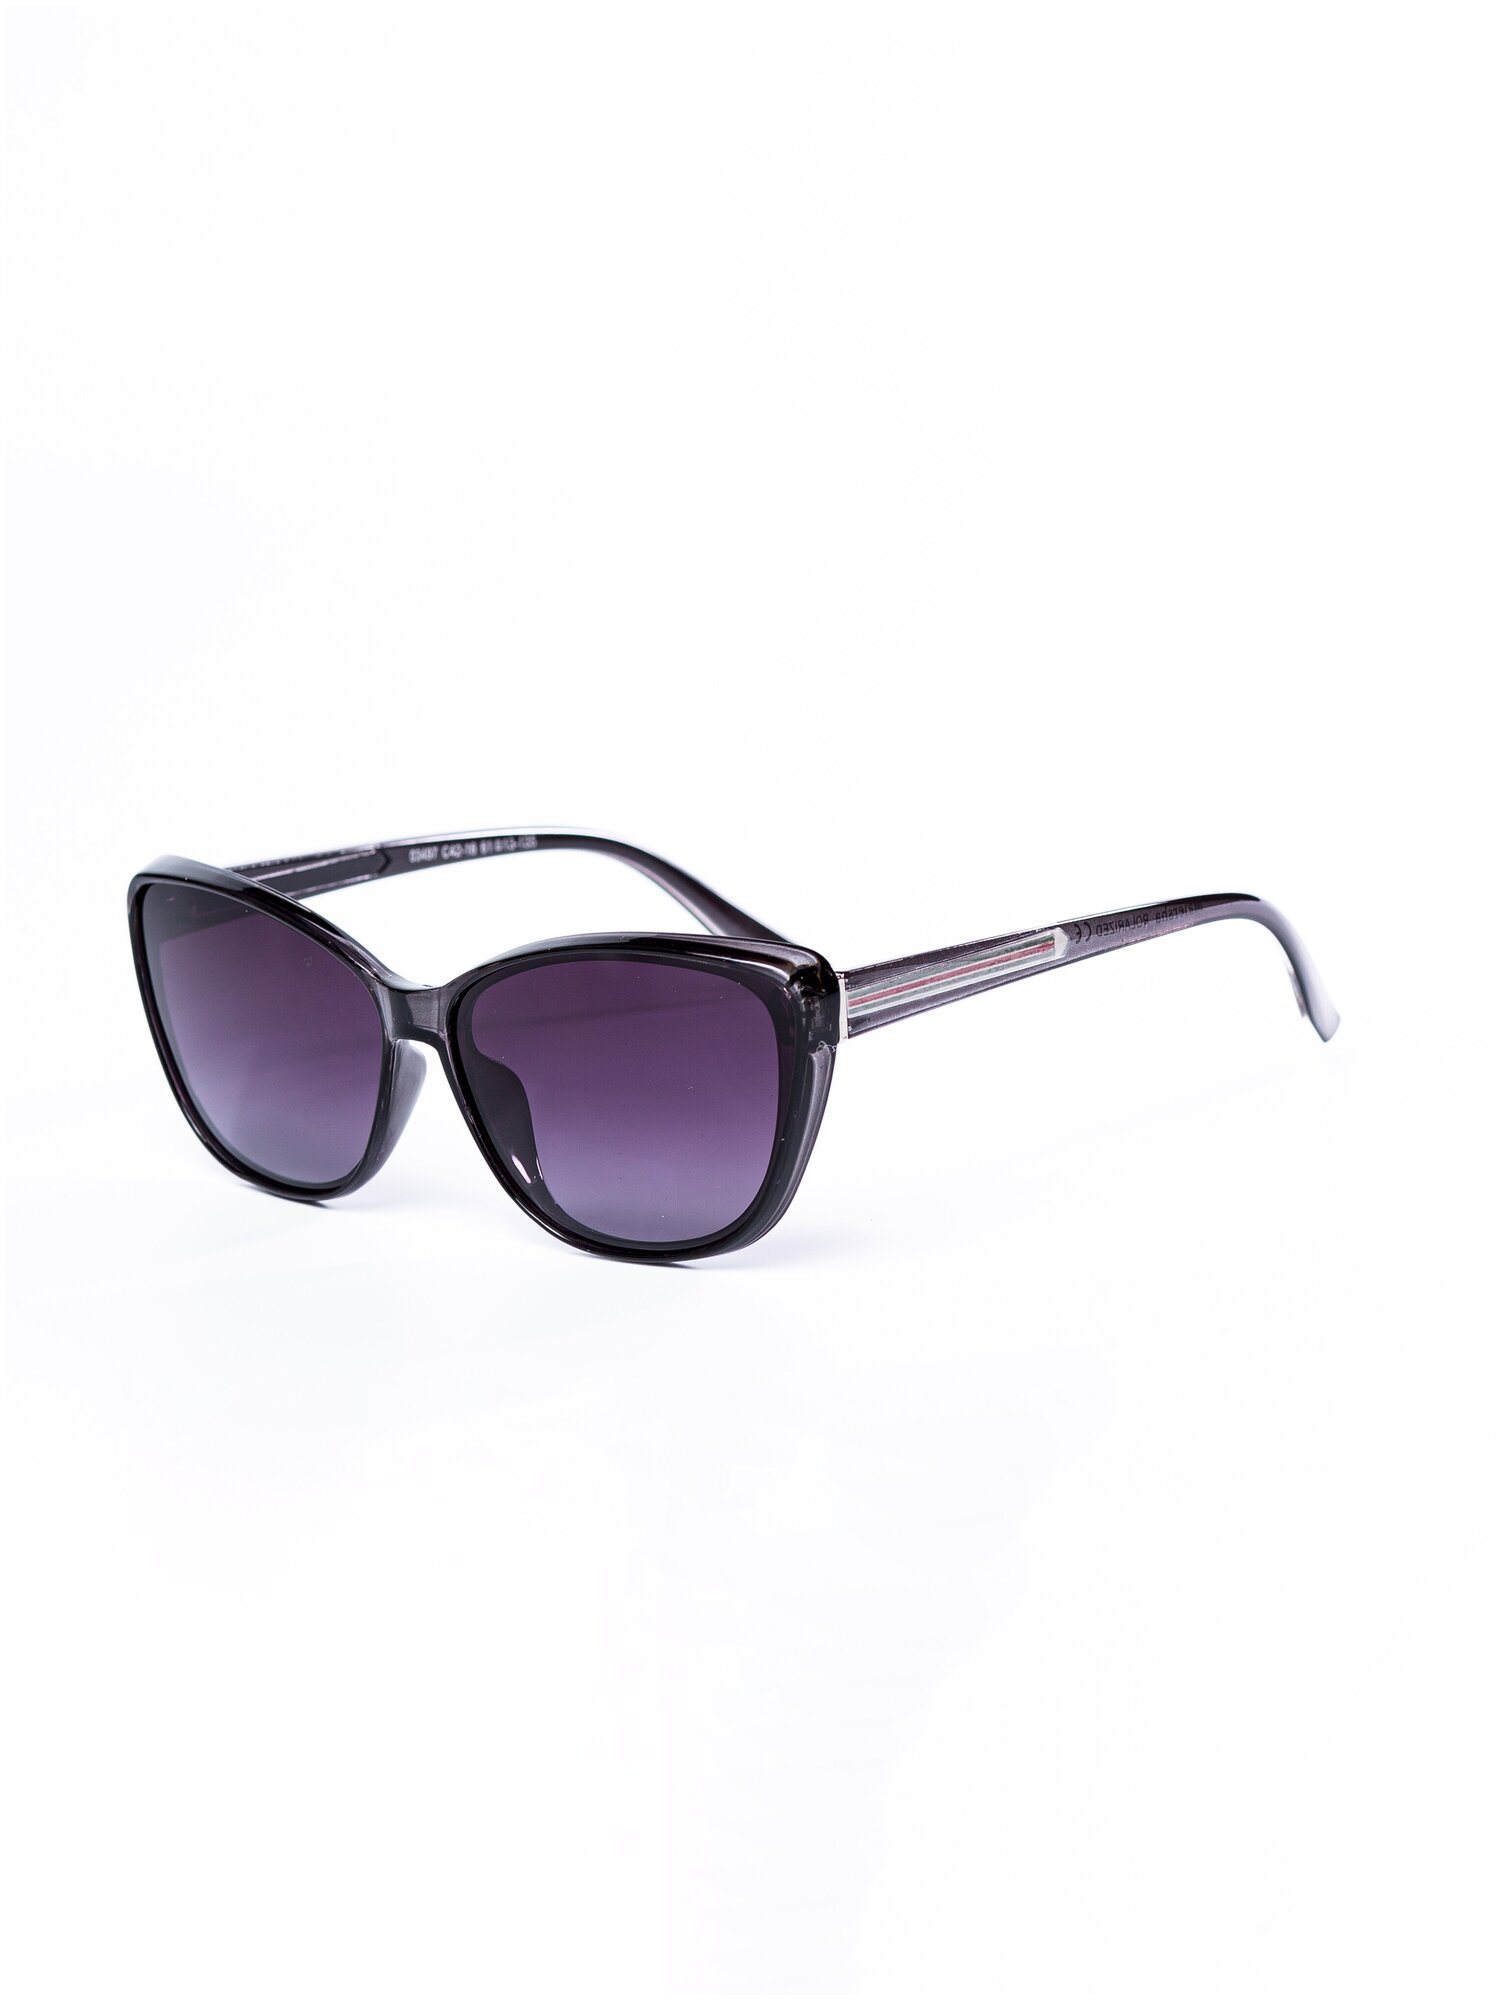 Солнцезащитные очки женские / Оправа «кошачий глаз» / Стильные очки / Ультрафиолетовый фильтр / Защита UV400 / Темные очки 200422526